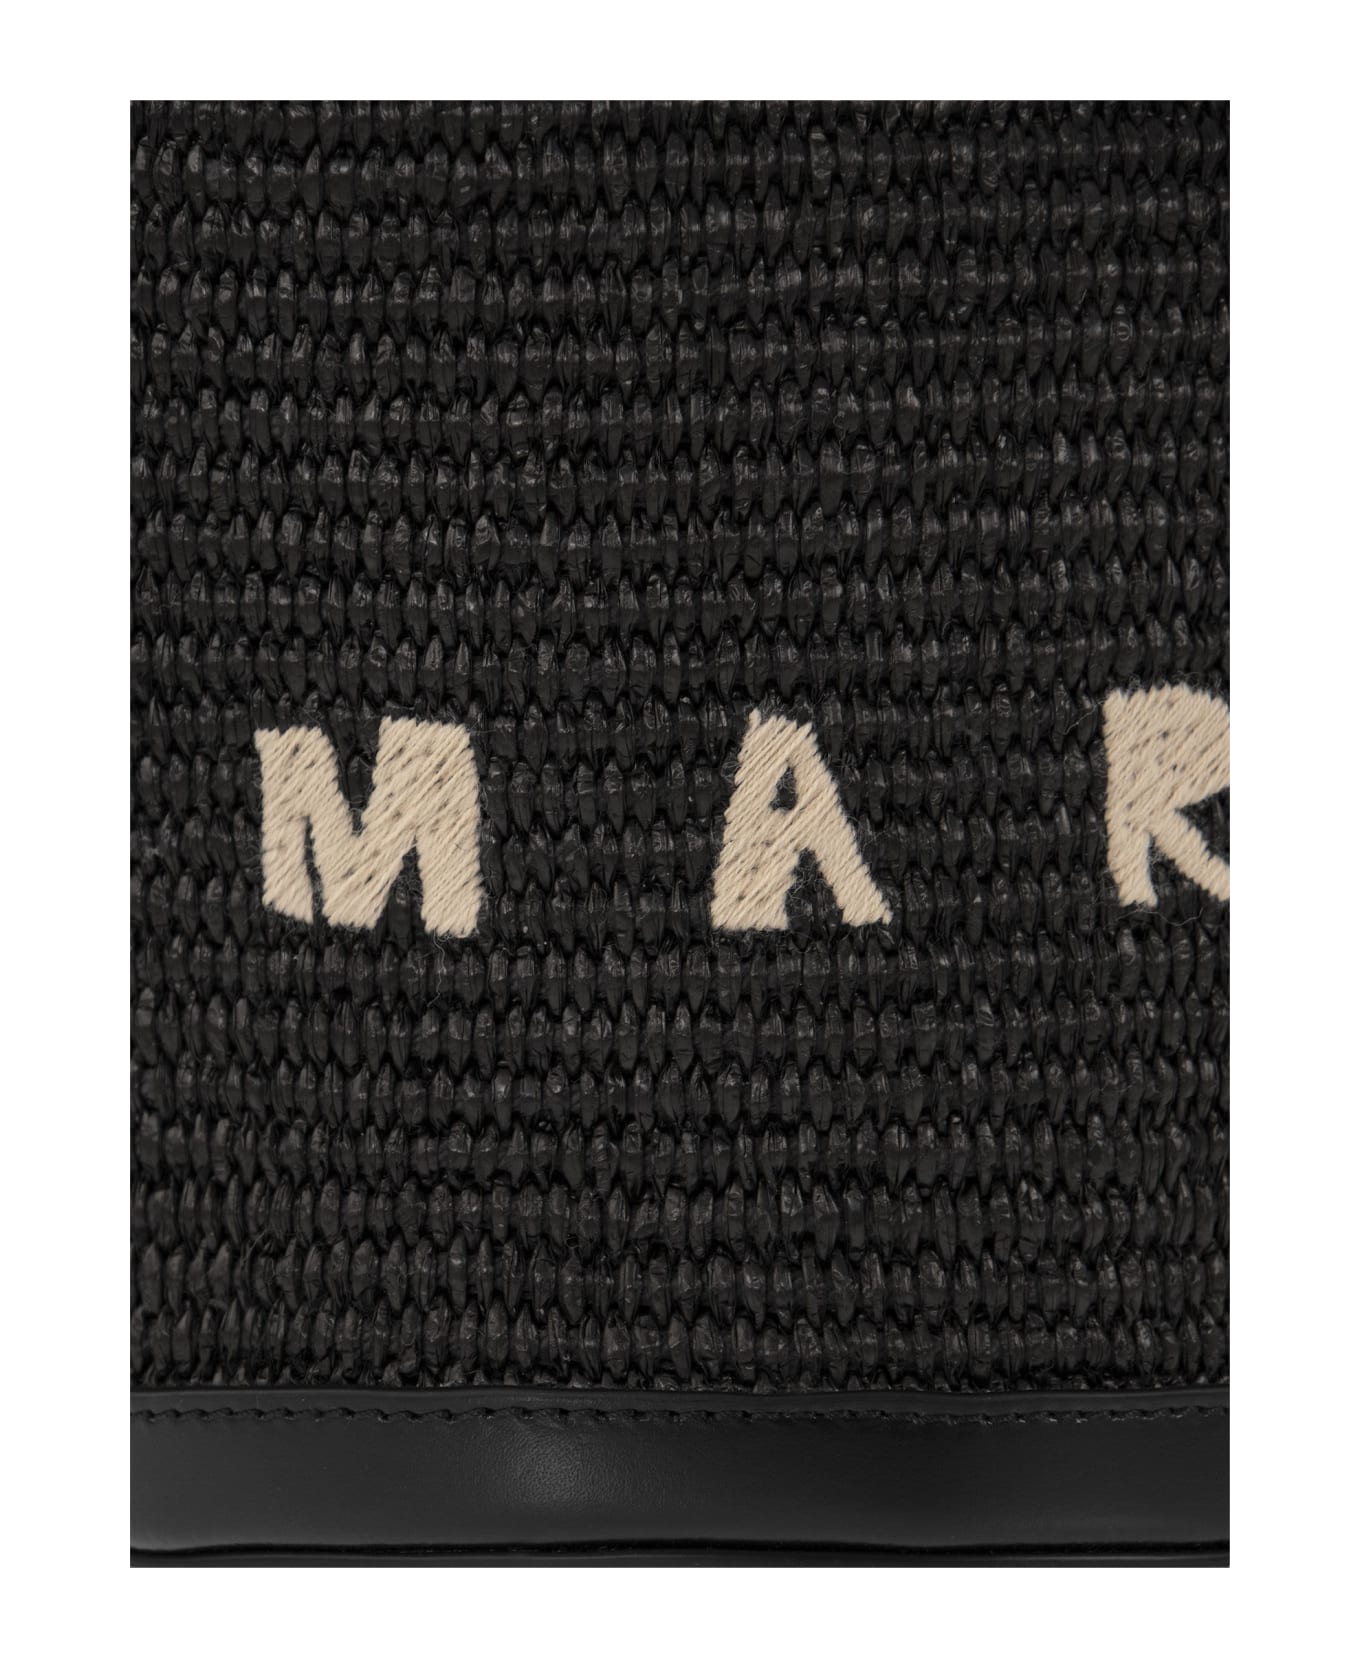 Marni Small Bucket Bag 'tropicalia' - Black